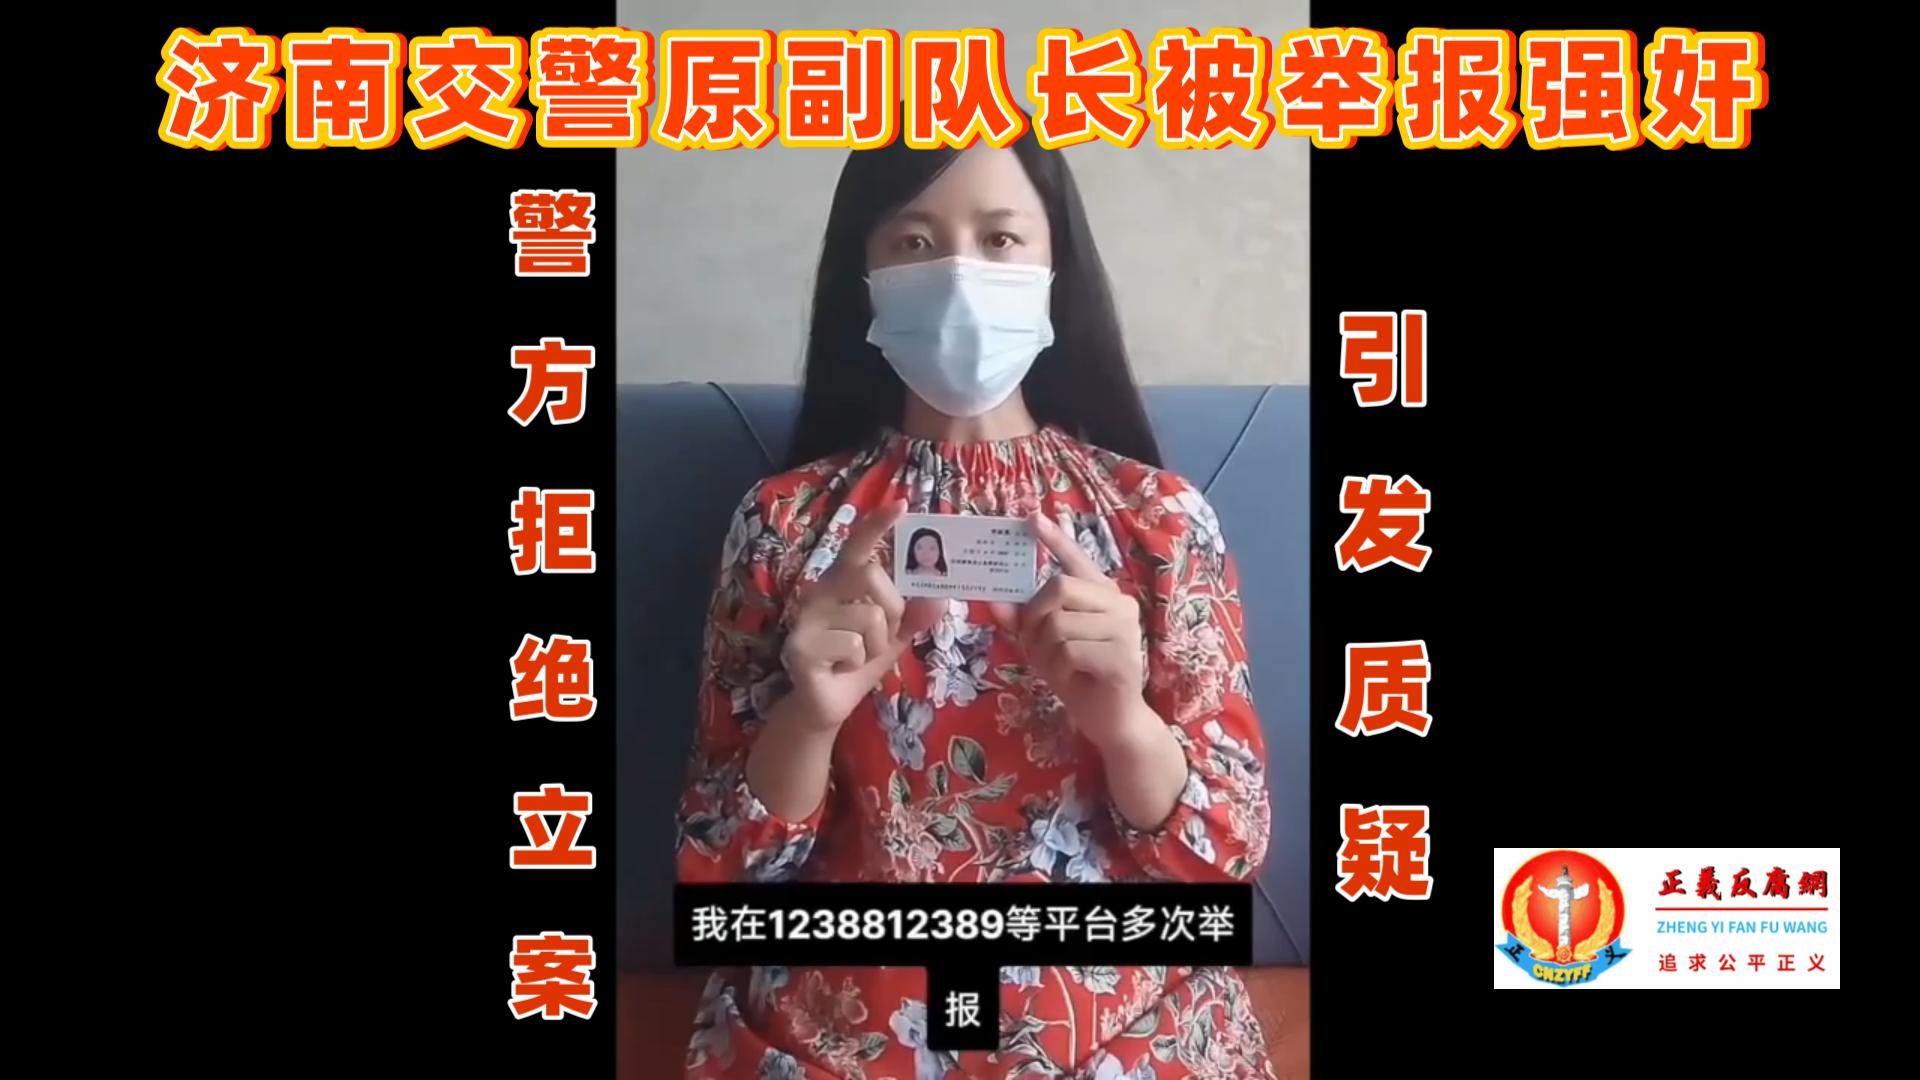 山东济南的葛女士发布视频，实名举报济南交警天桥二中队原副队长刘滨强奸、婚内出轨、受贿等，但济南警方拒绝立案，引发质疑.jpg